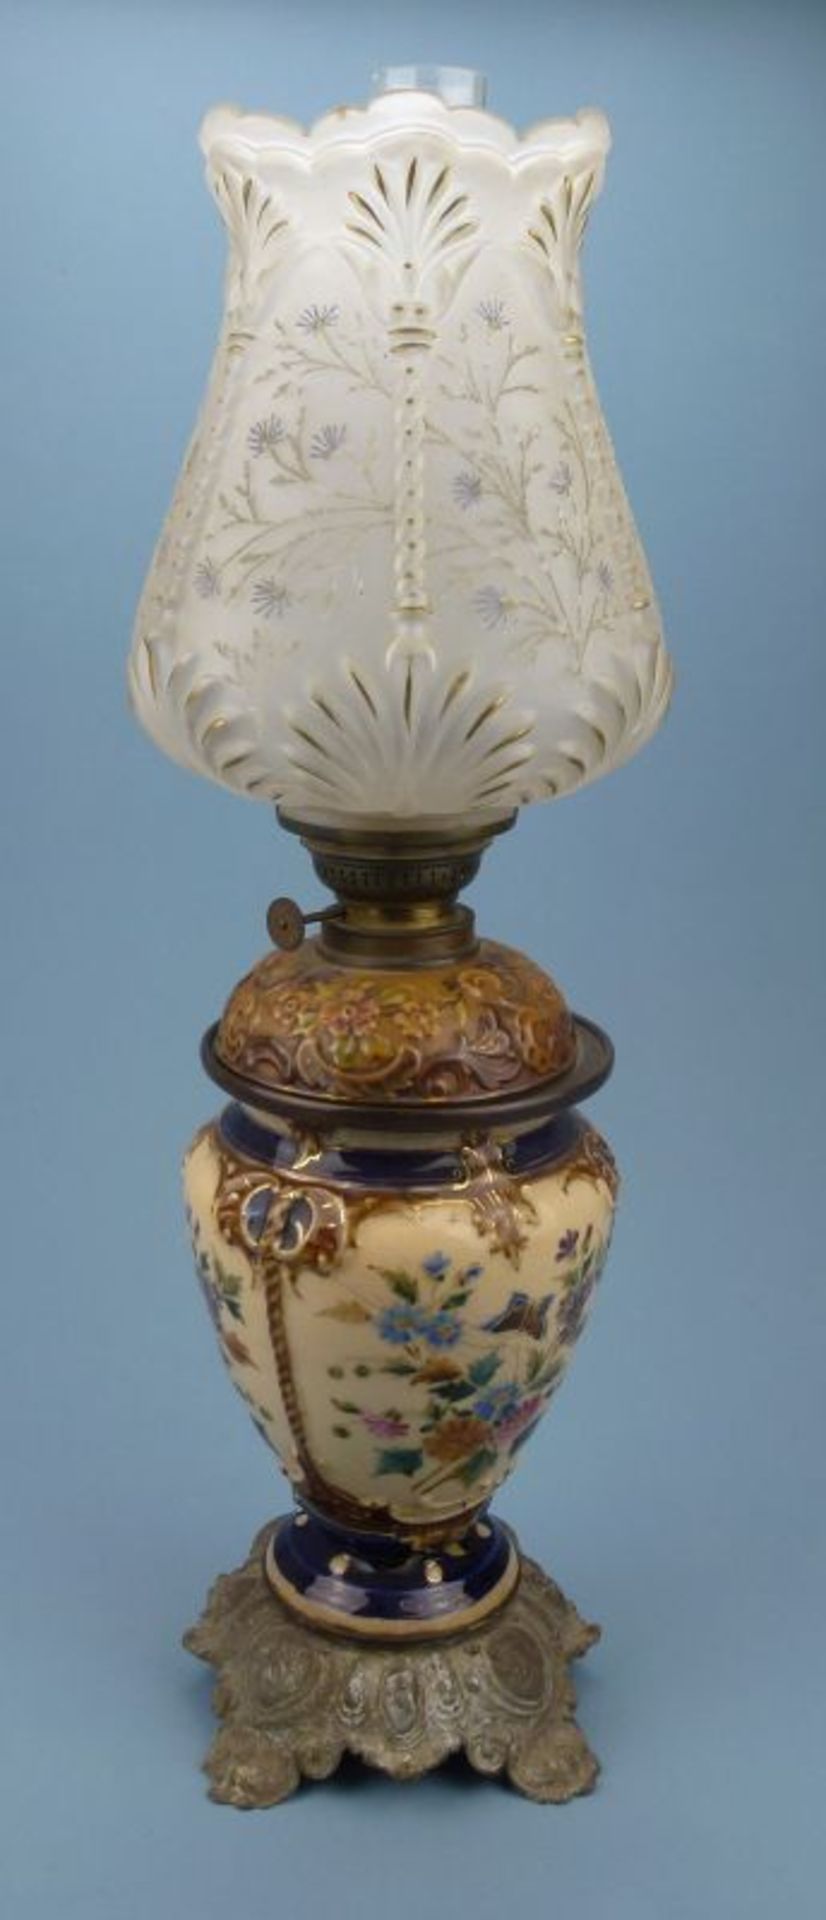 Petroleumlampe, um 1900